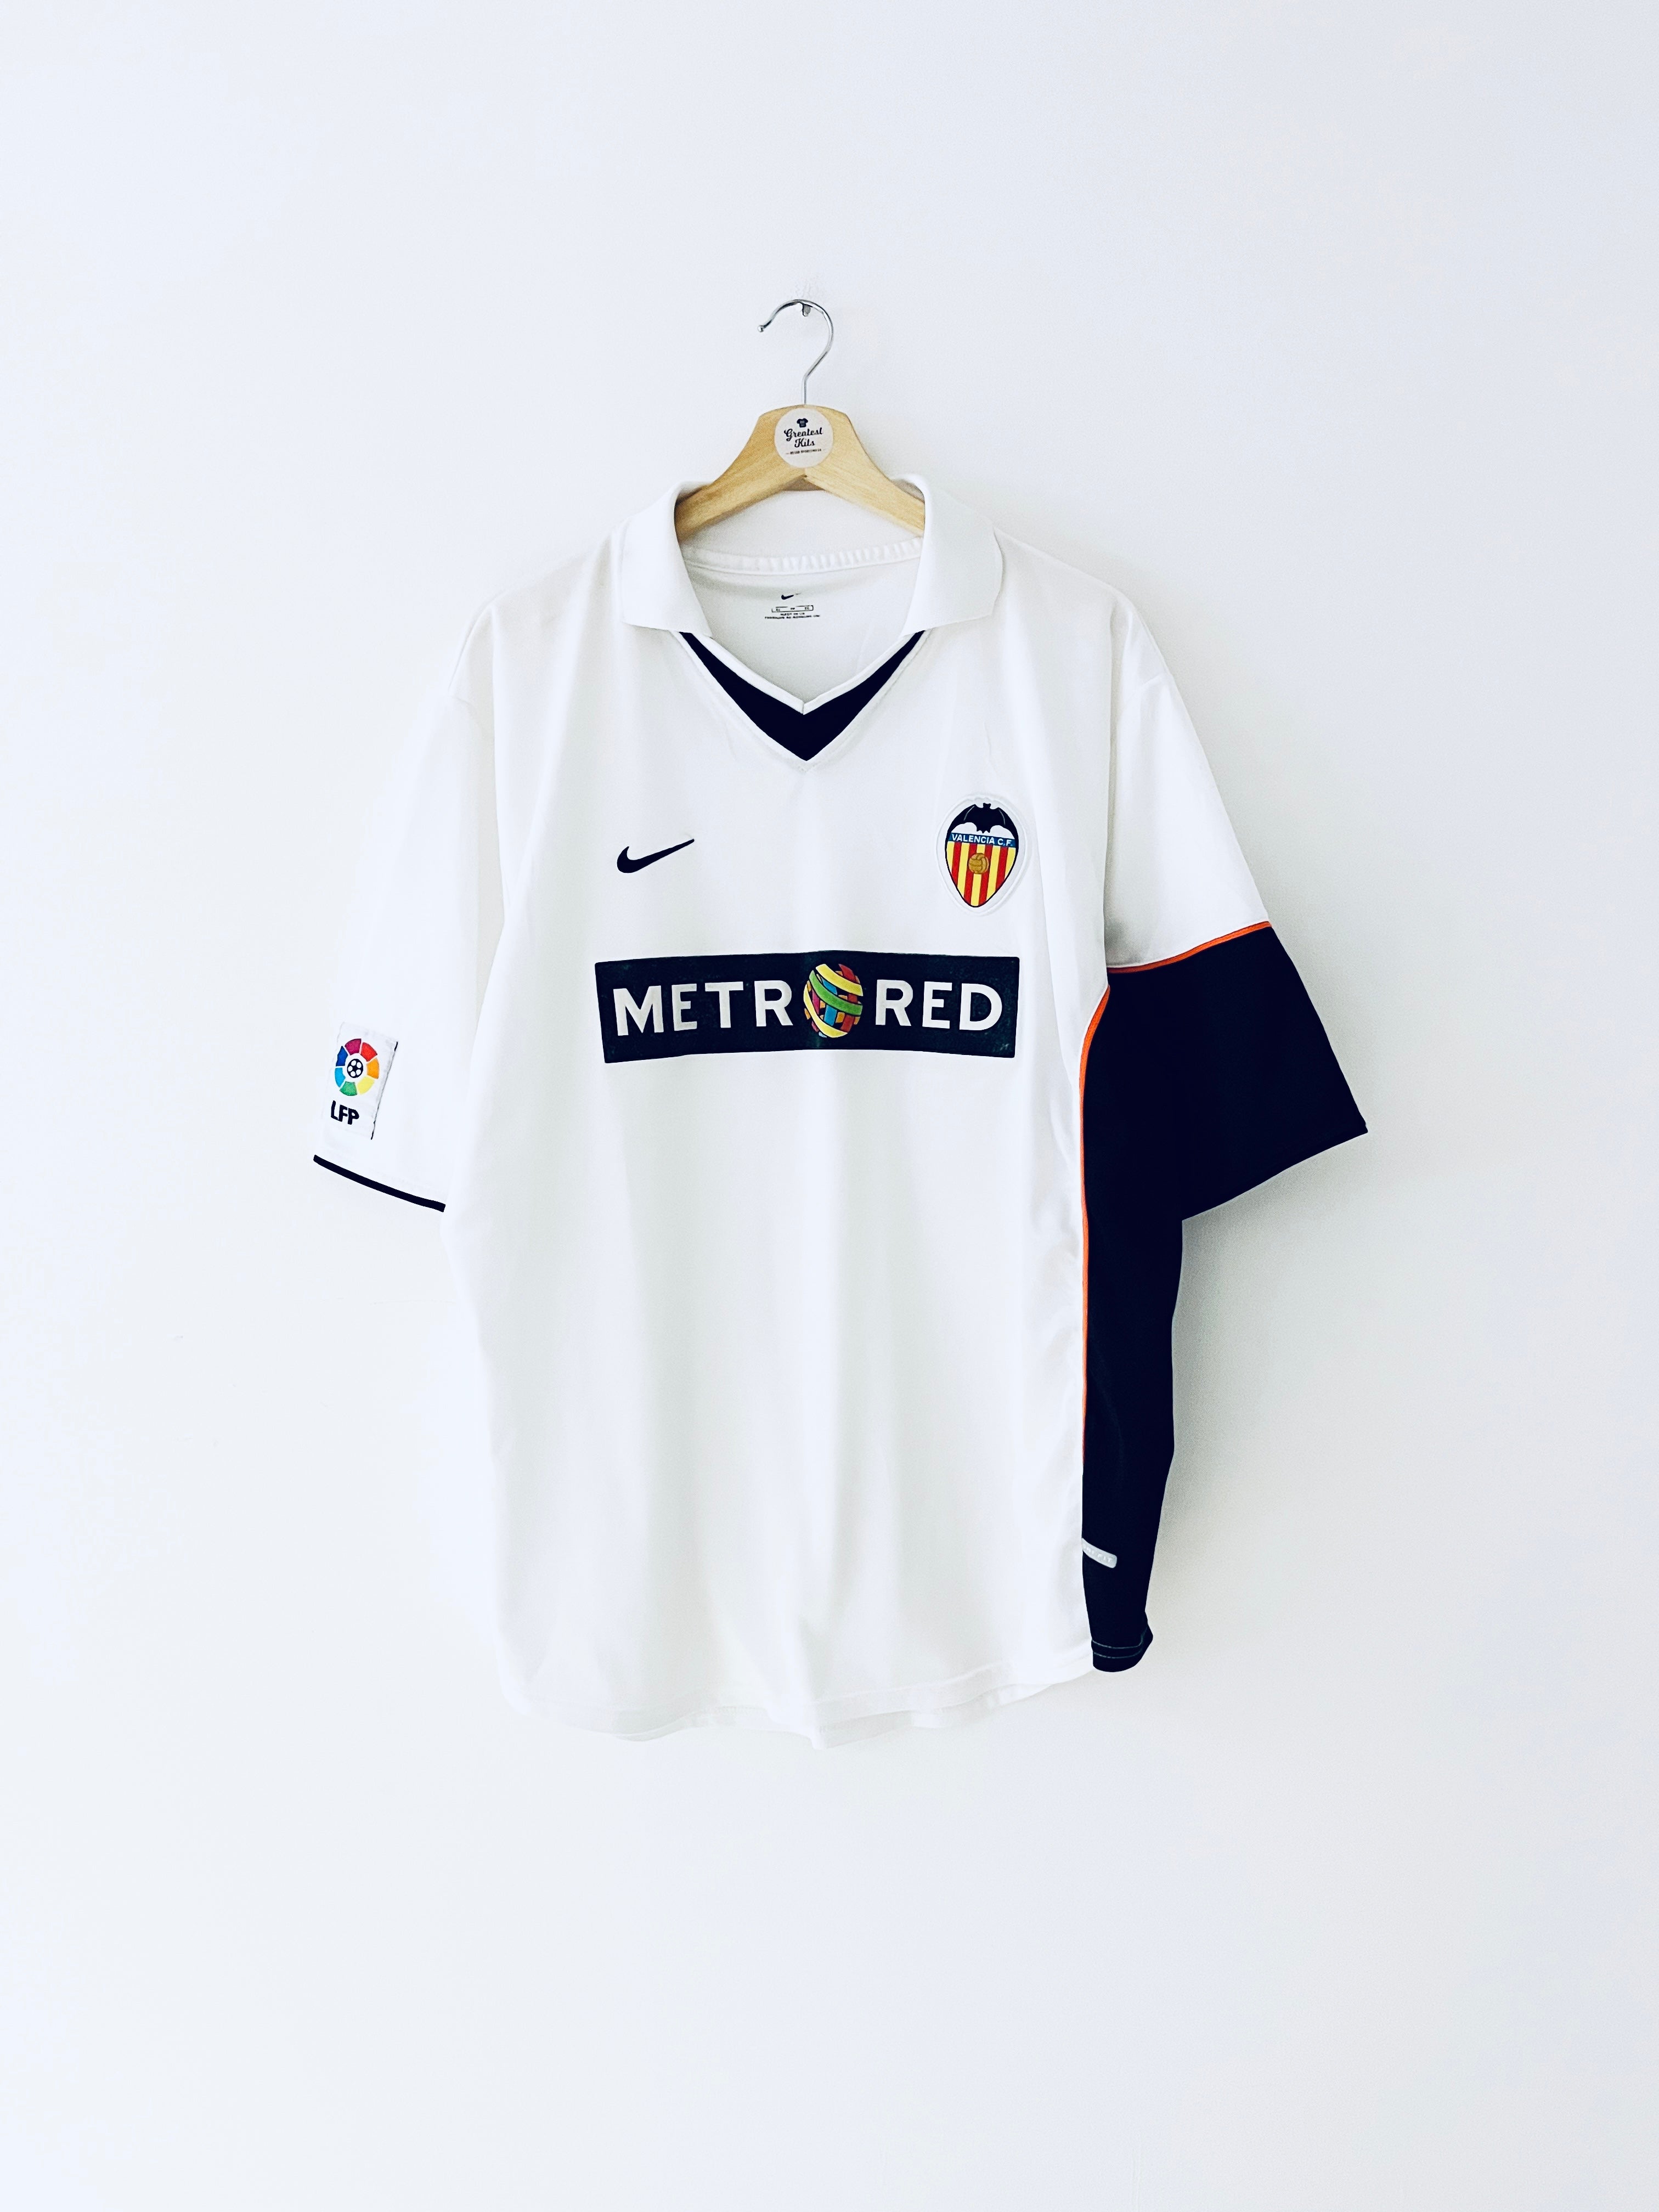 Camiseta de local Valencia 2001/02 (XL) 8.5/10 